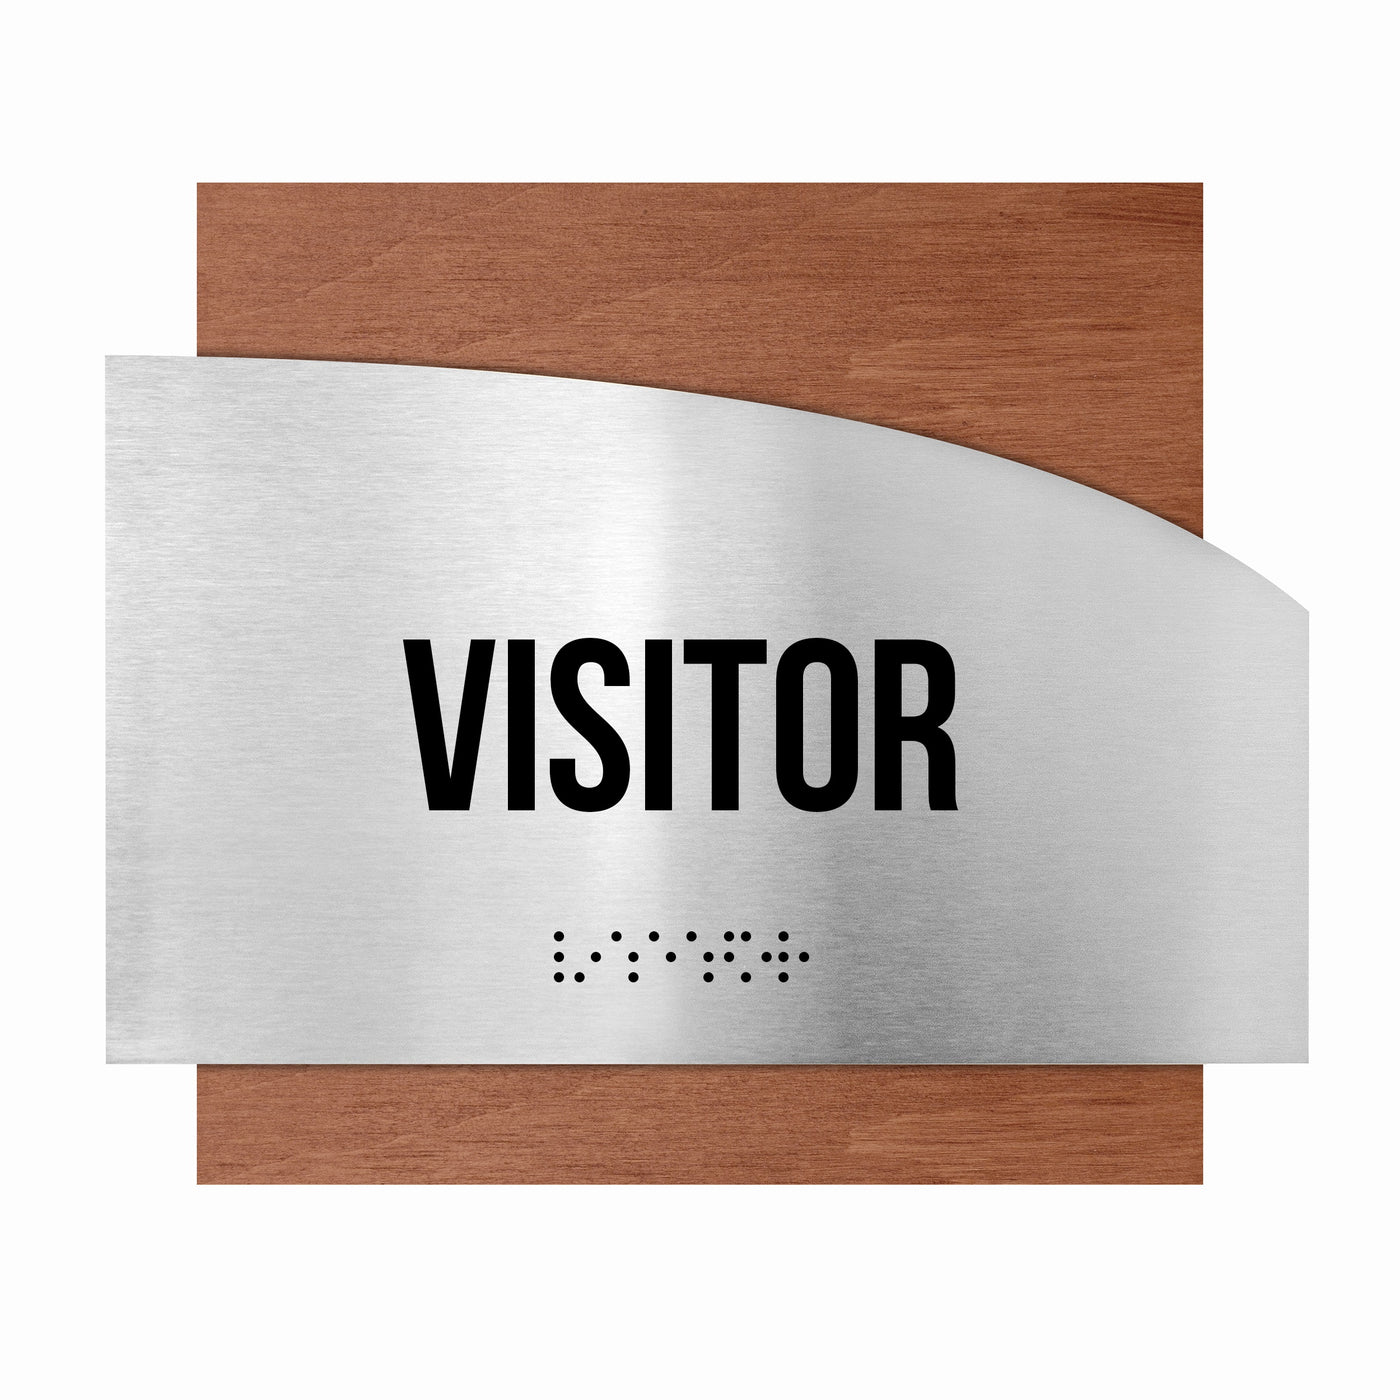 Information Signs - Wooden Visitor Sign "Wave" Design